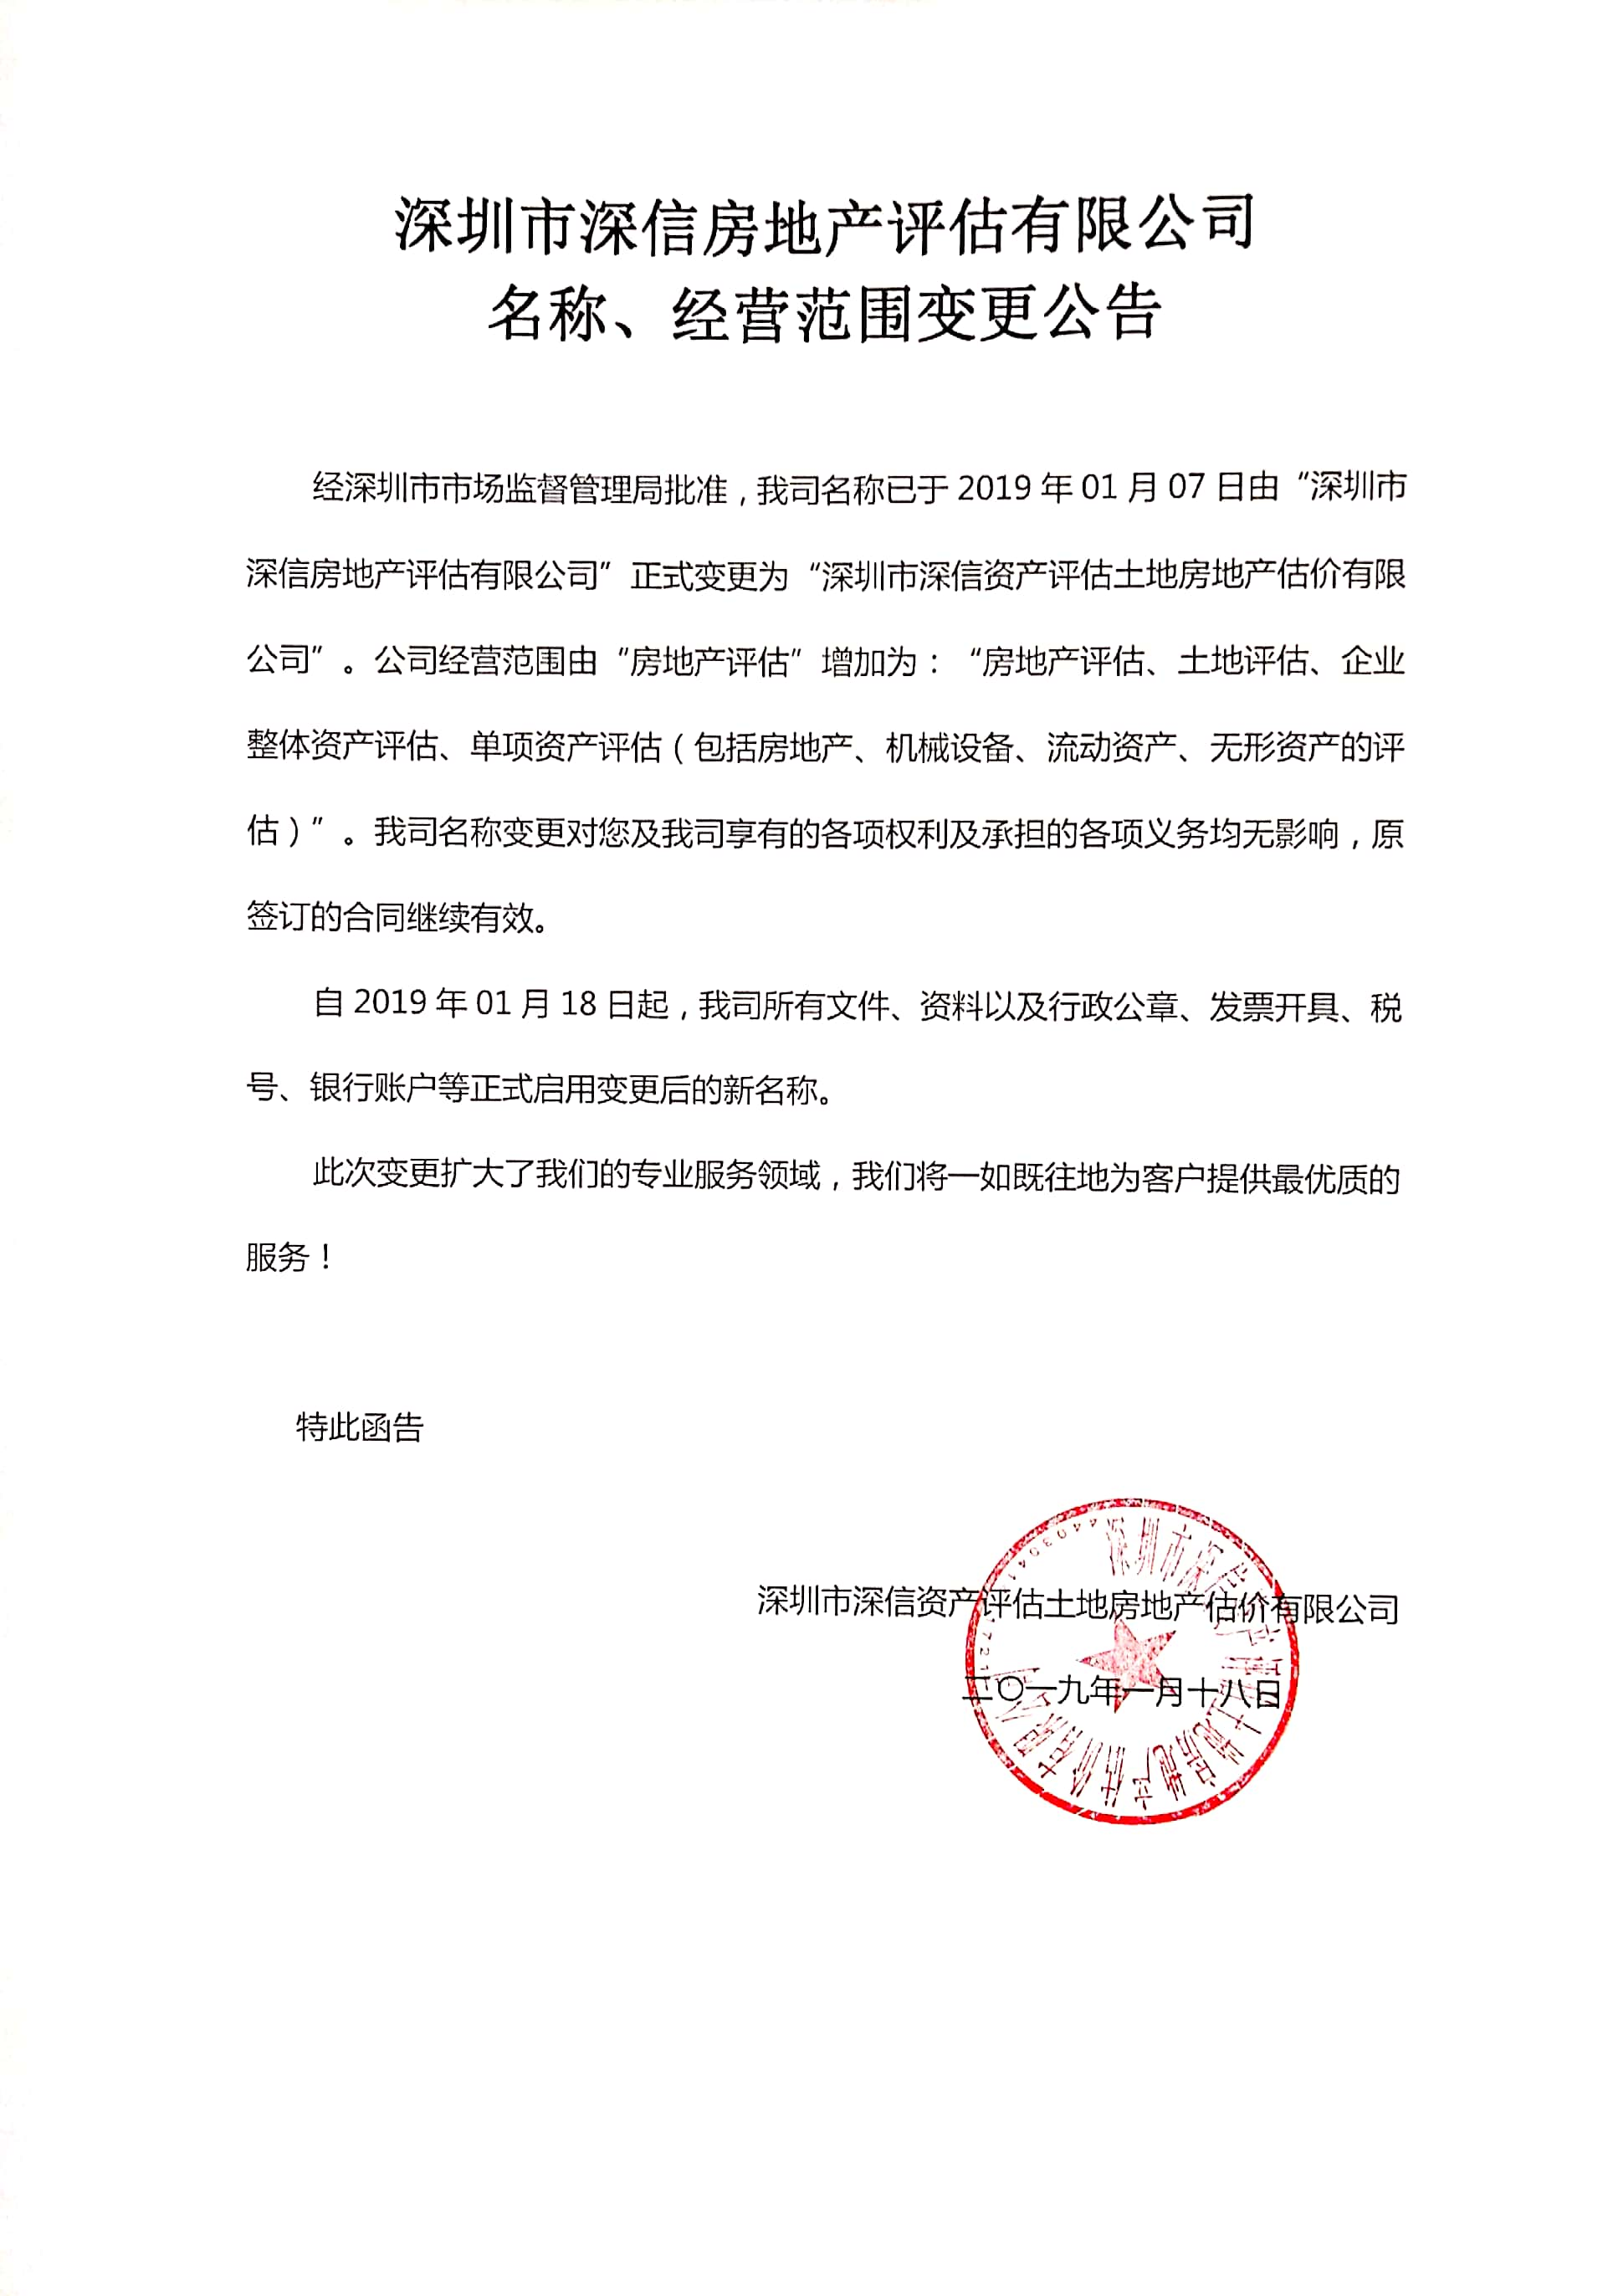 深圳市深信房地产评估有限公司 名称、经营范围变更公告(图1)